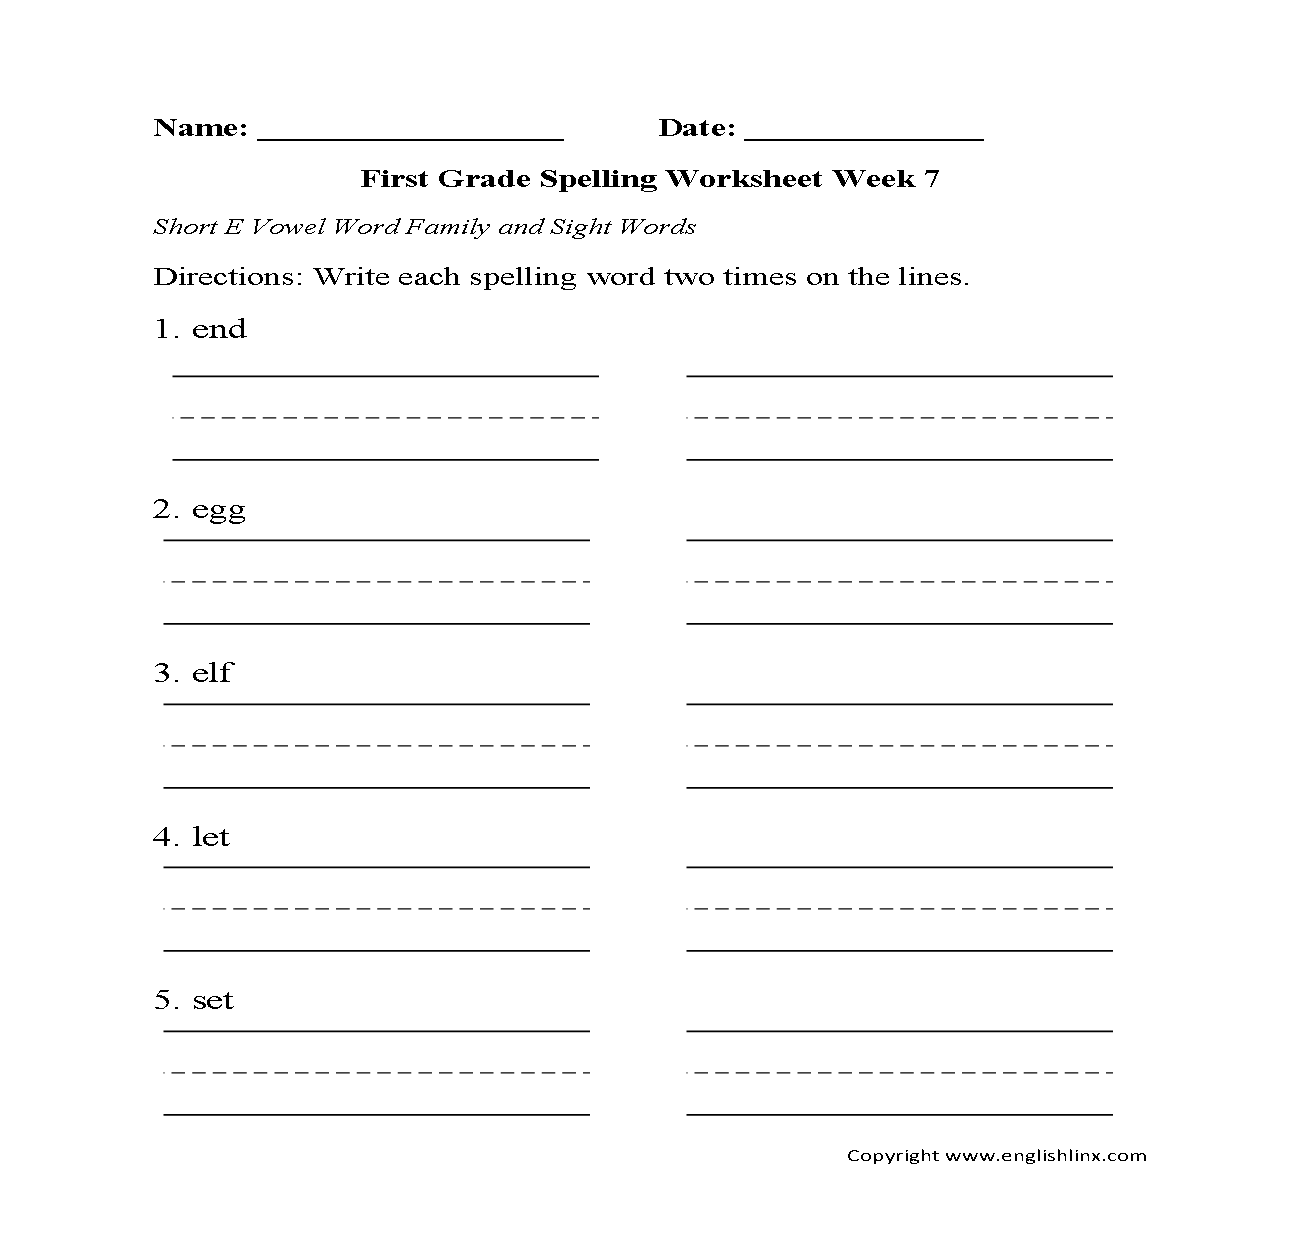 Week 7 Short E Vowel First Grade Spelling Worksheets